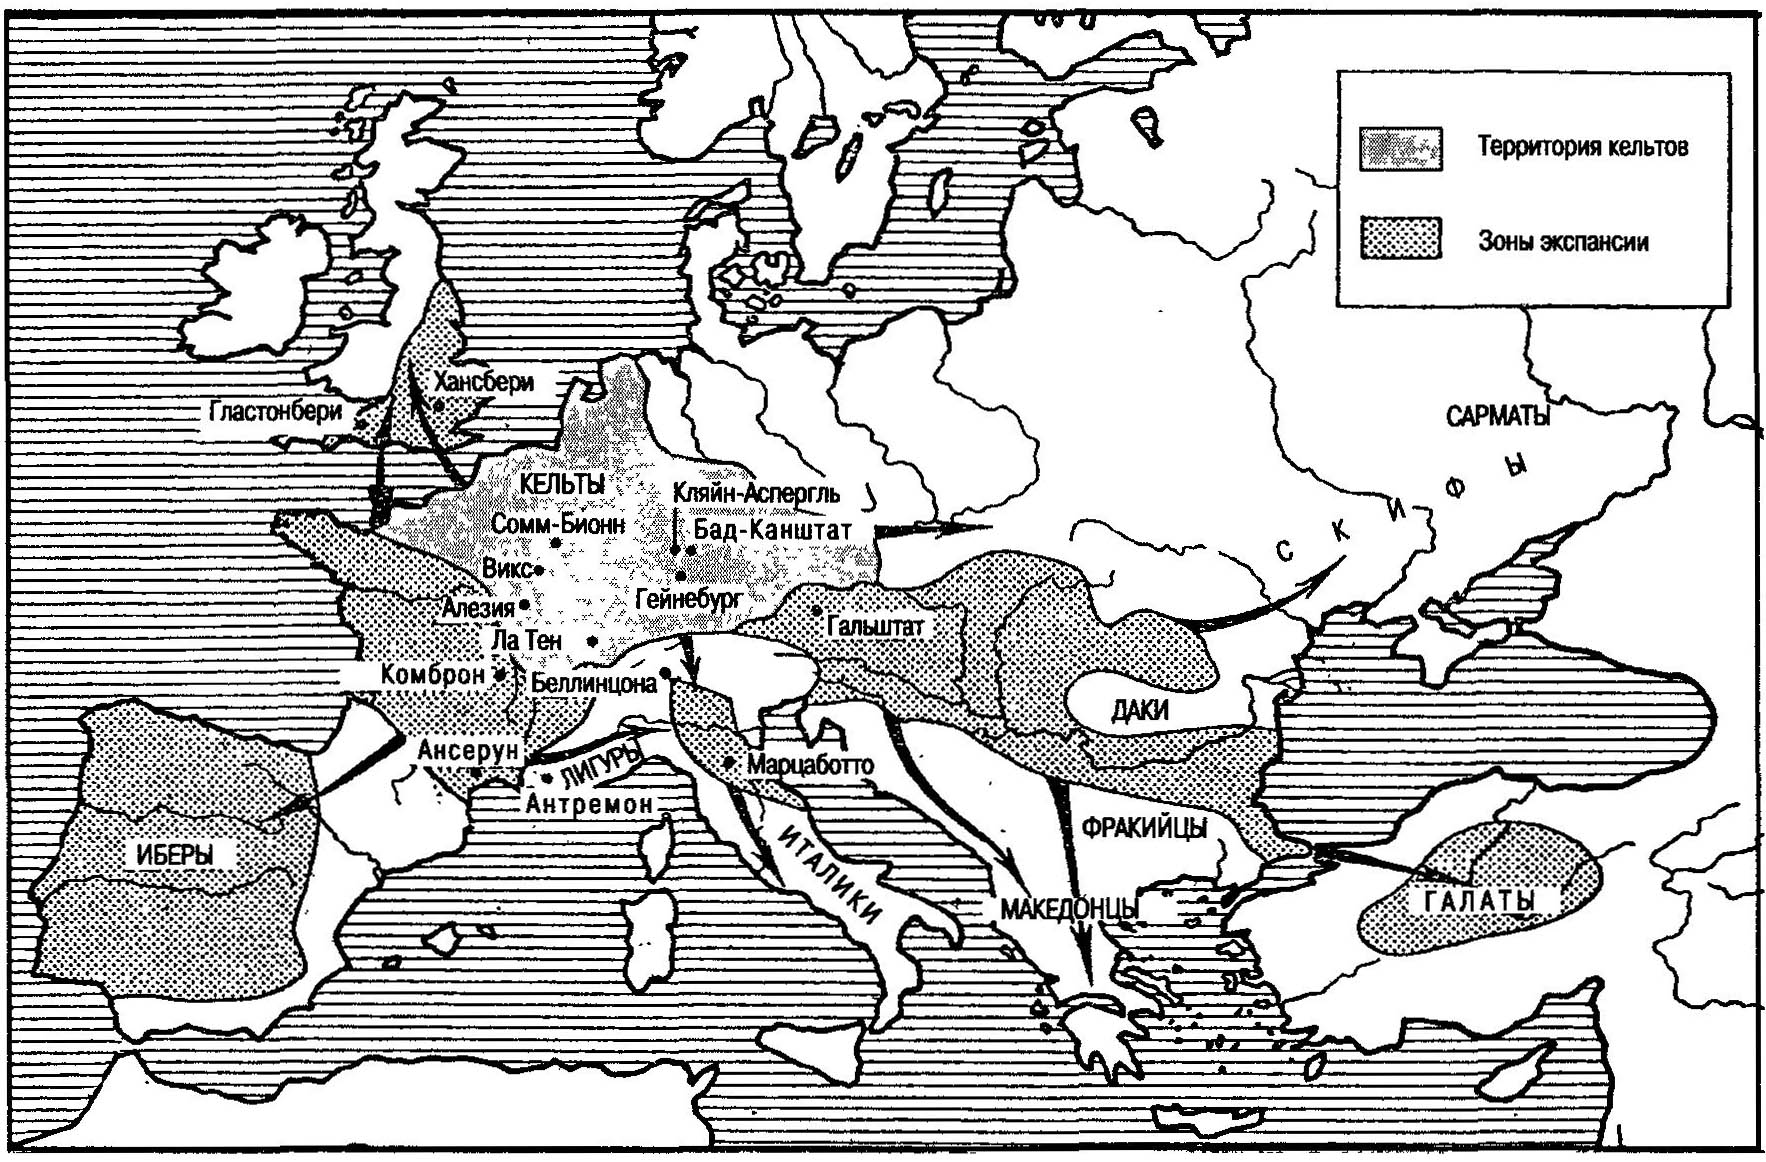 Кельтская экспансия в эпоху Ла Тен II (VI-III века до нашей эры)